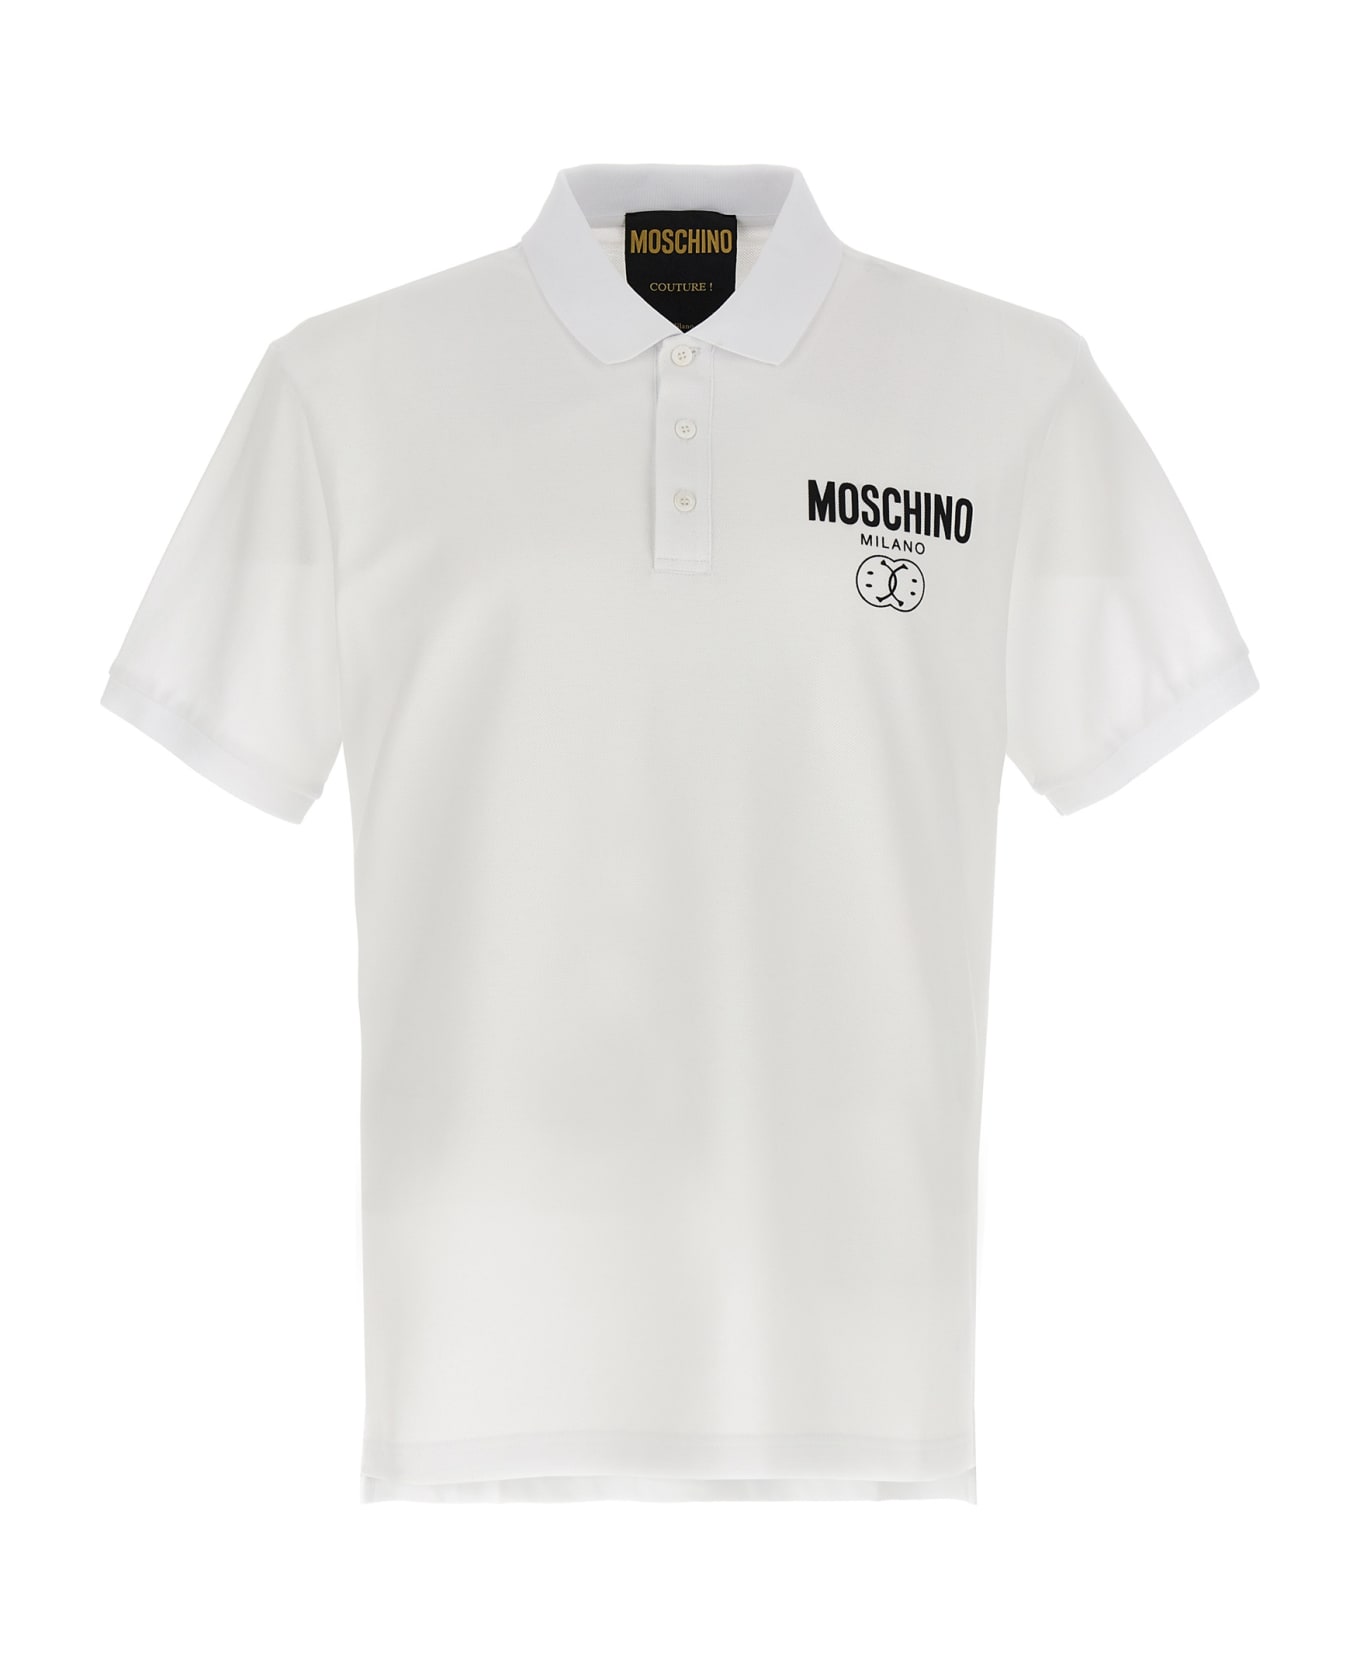 Moschino 'double Smile' Polo Shirt - White/Black